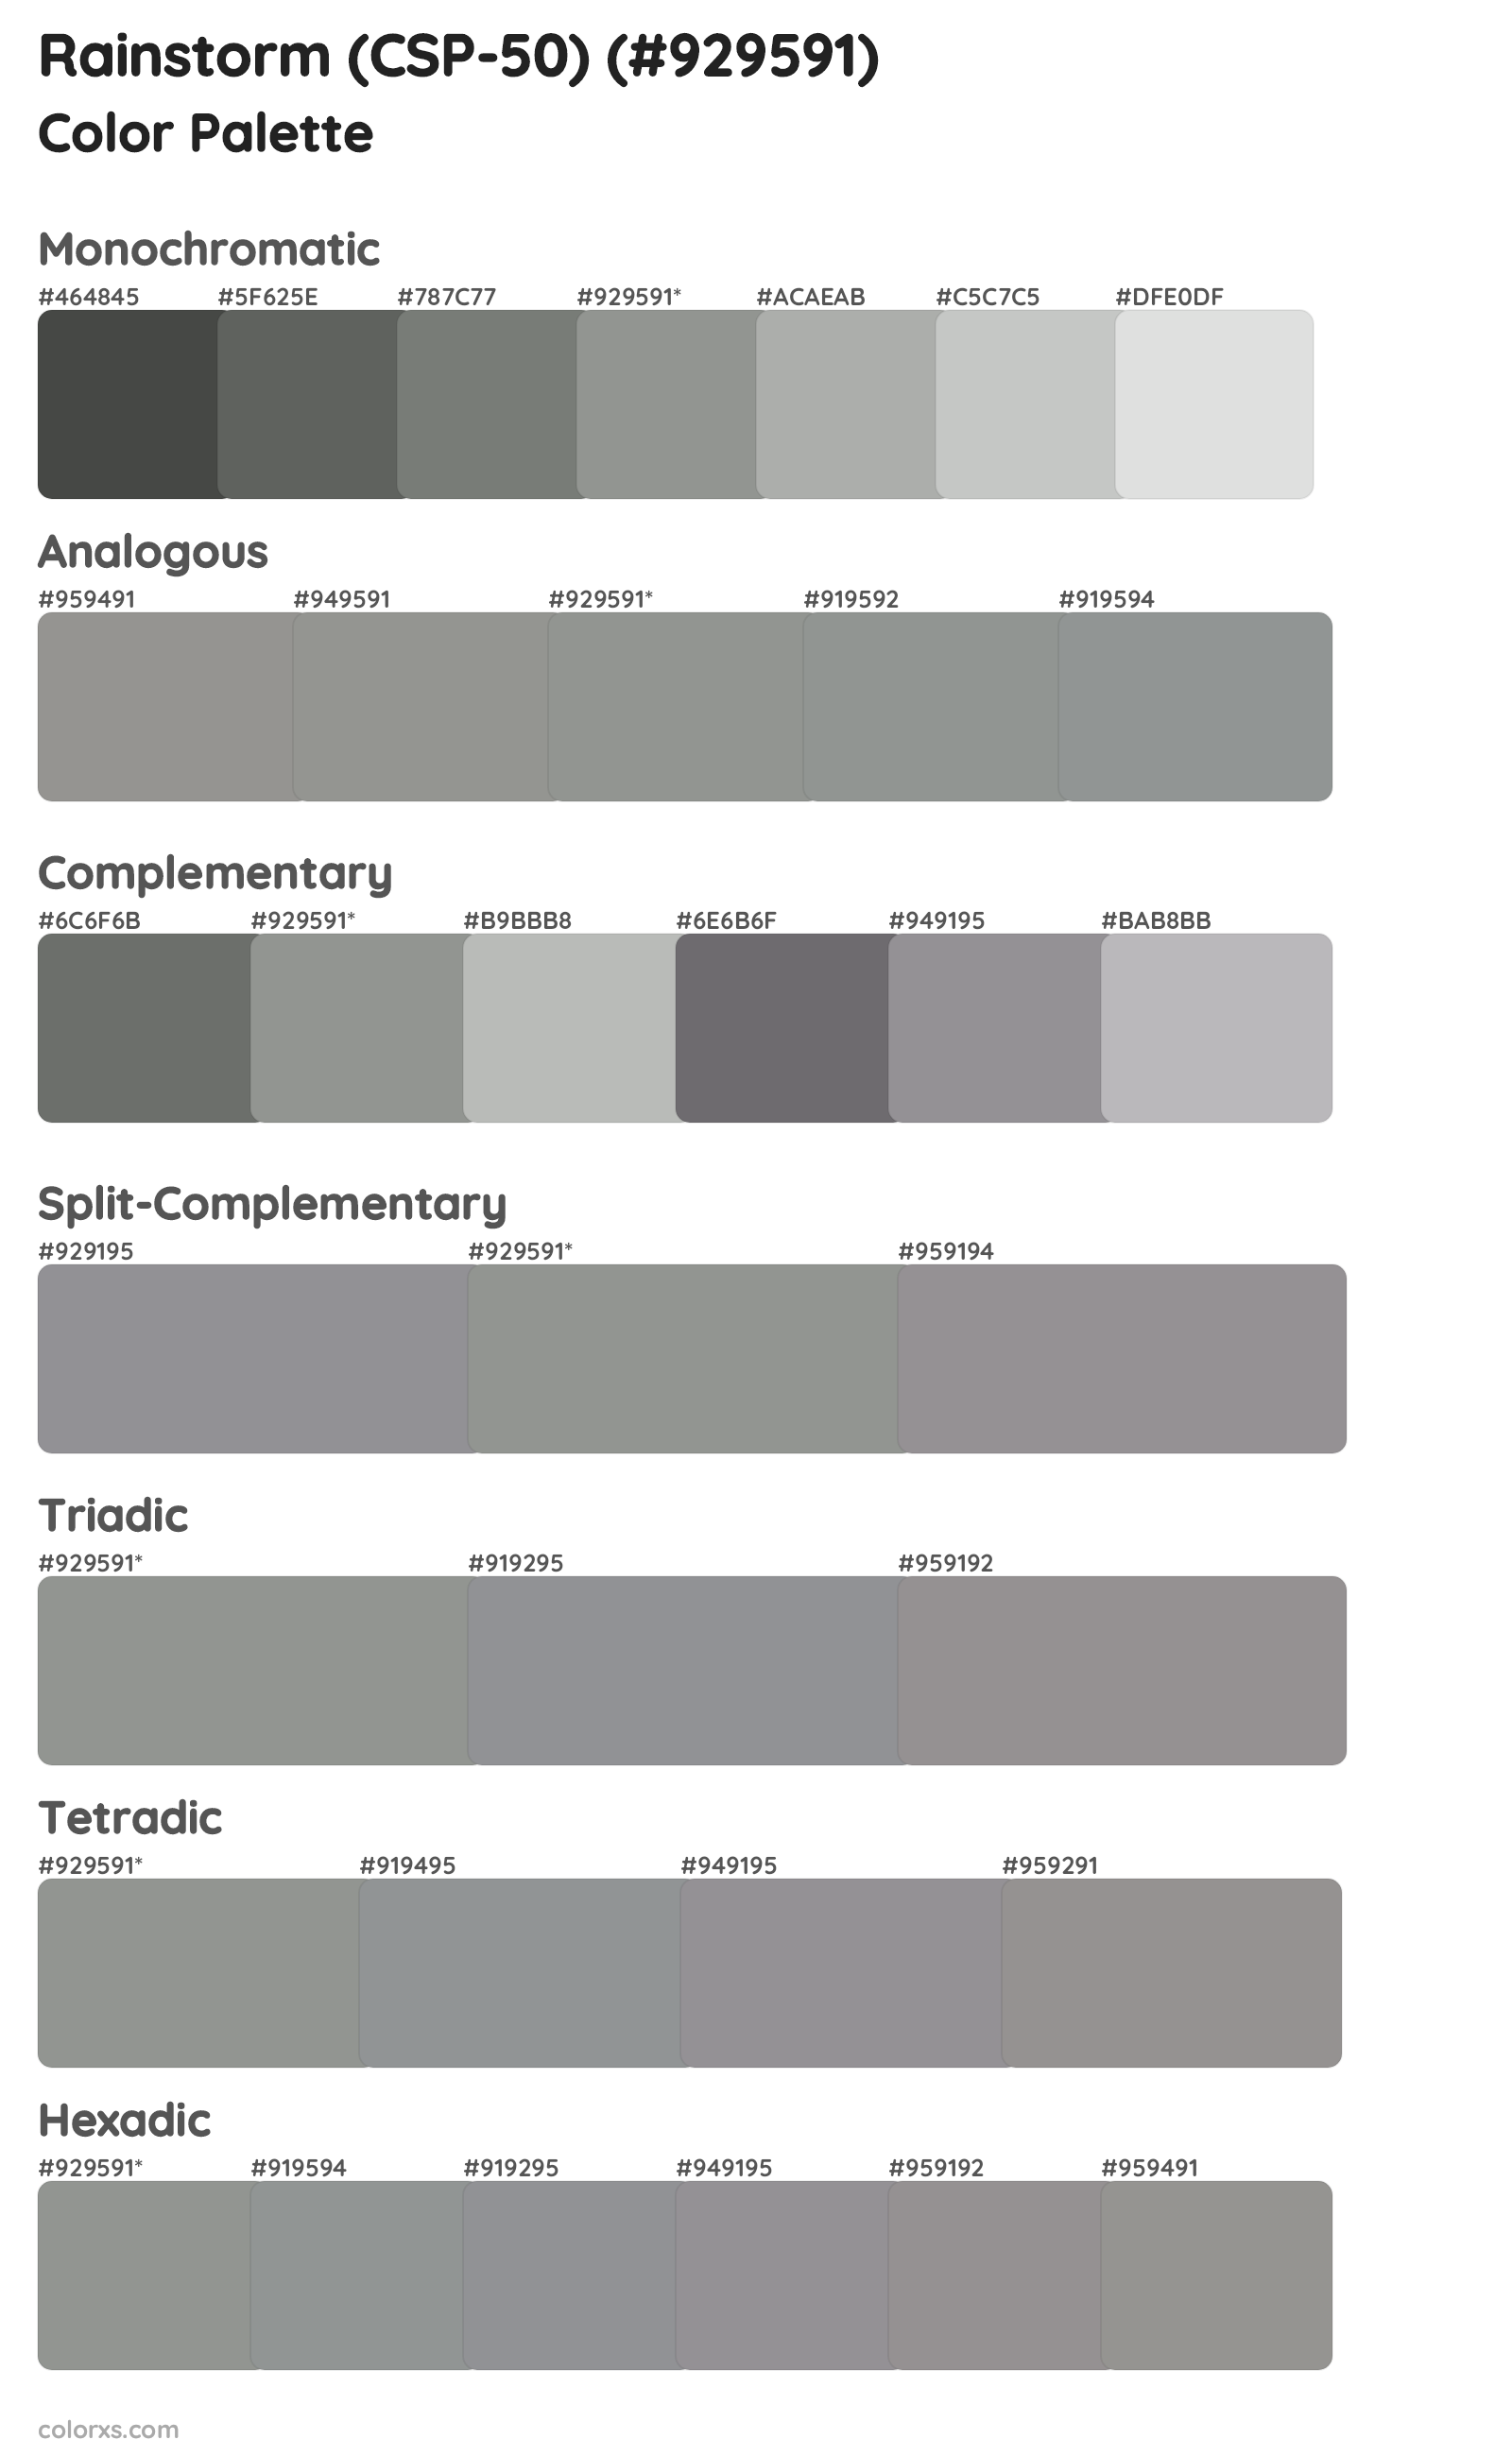 Rainstorm (CSP-50) Color Scheme Palettes